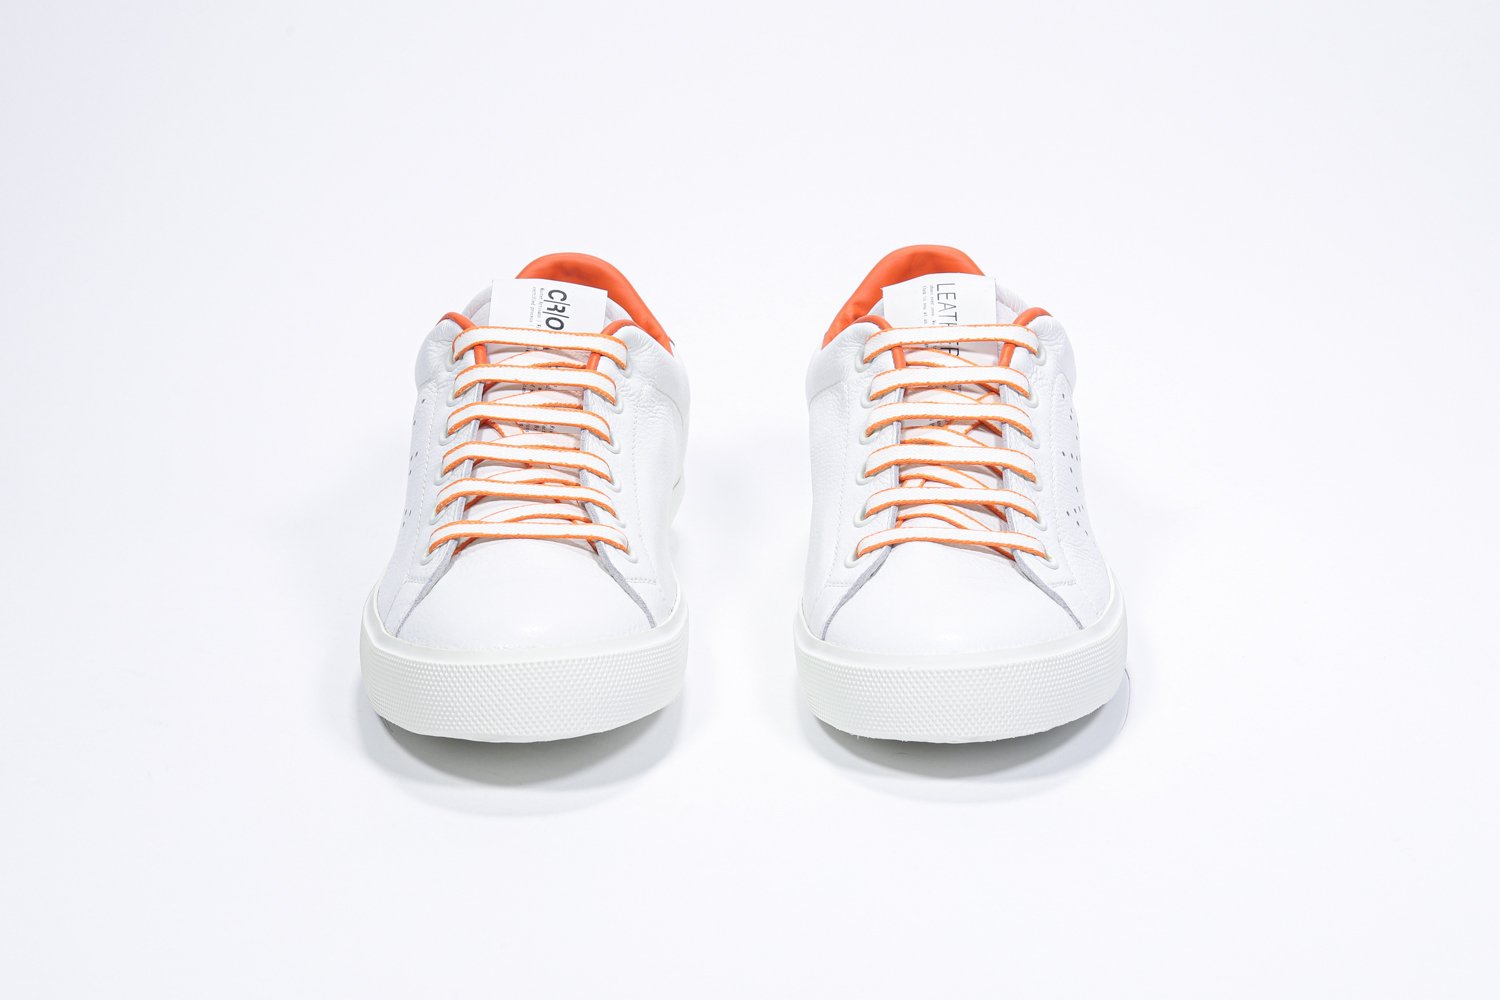 Vorderansicht des weißen Low Top sneaker mit orangefarbenen Details und perforiertem Kronenlogo auf dem Obermaterial. Obermaterial aus Vollleder und weiße Gummisohle.